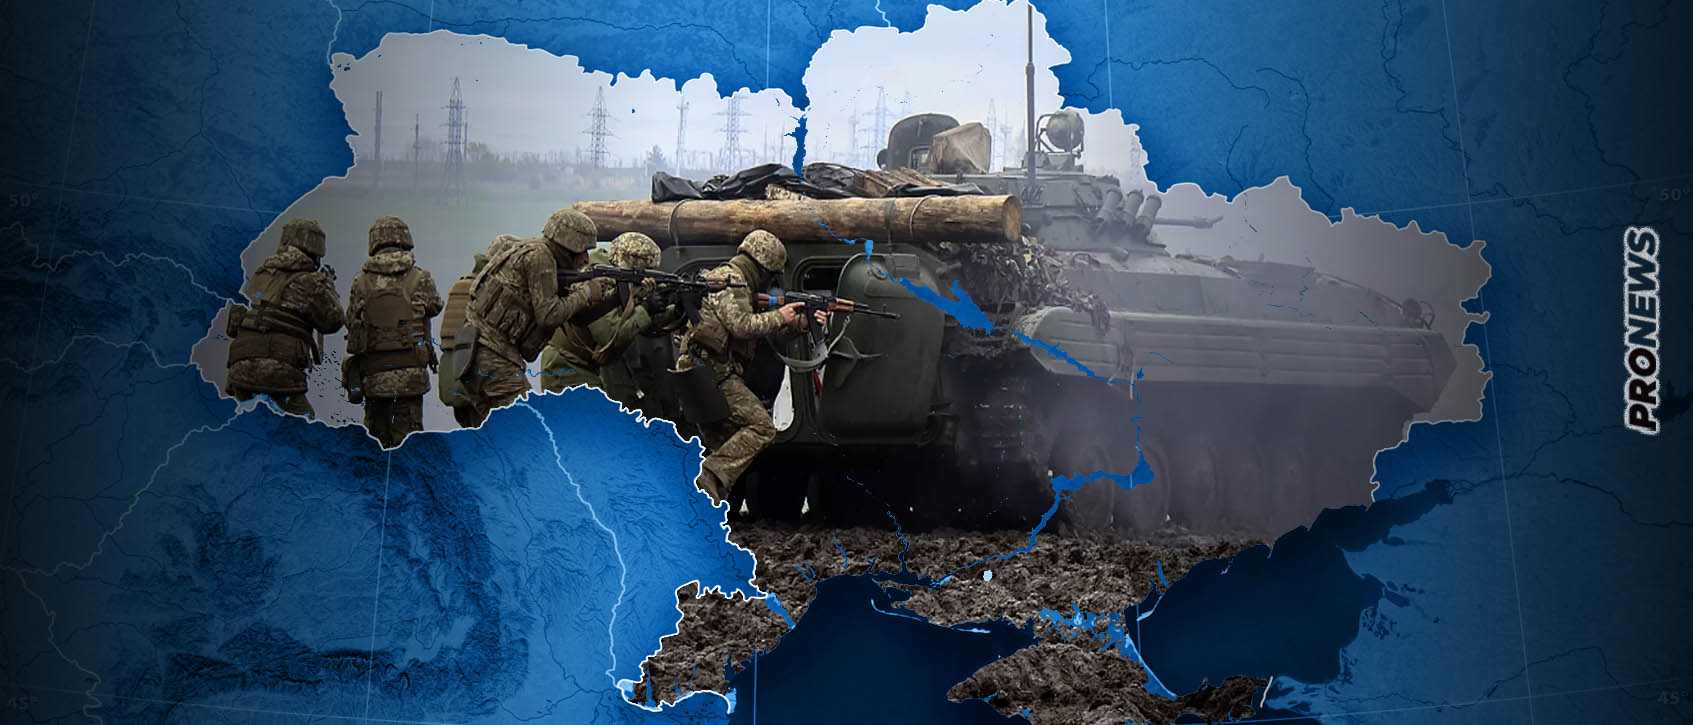 «Σφαγή» των ουκρανικών μονάδων στο μέτωπο της Ζαπορίζια: Οι Ρώσοι ανακατέλαβαν ότι είχαν χάσει τις προηγούμενες ημέρες